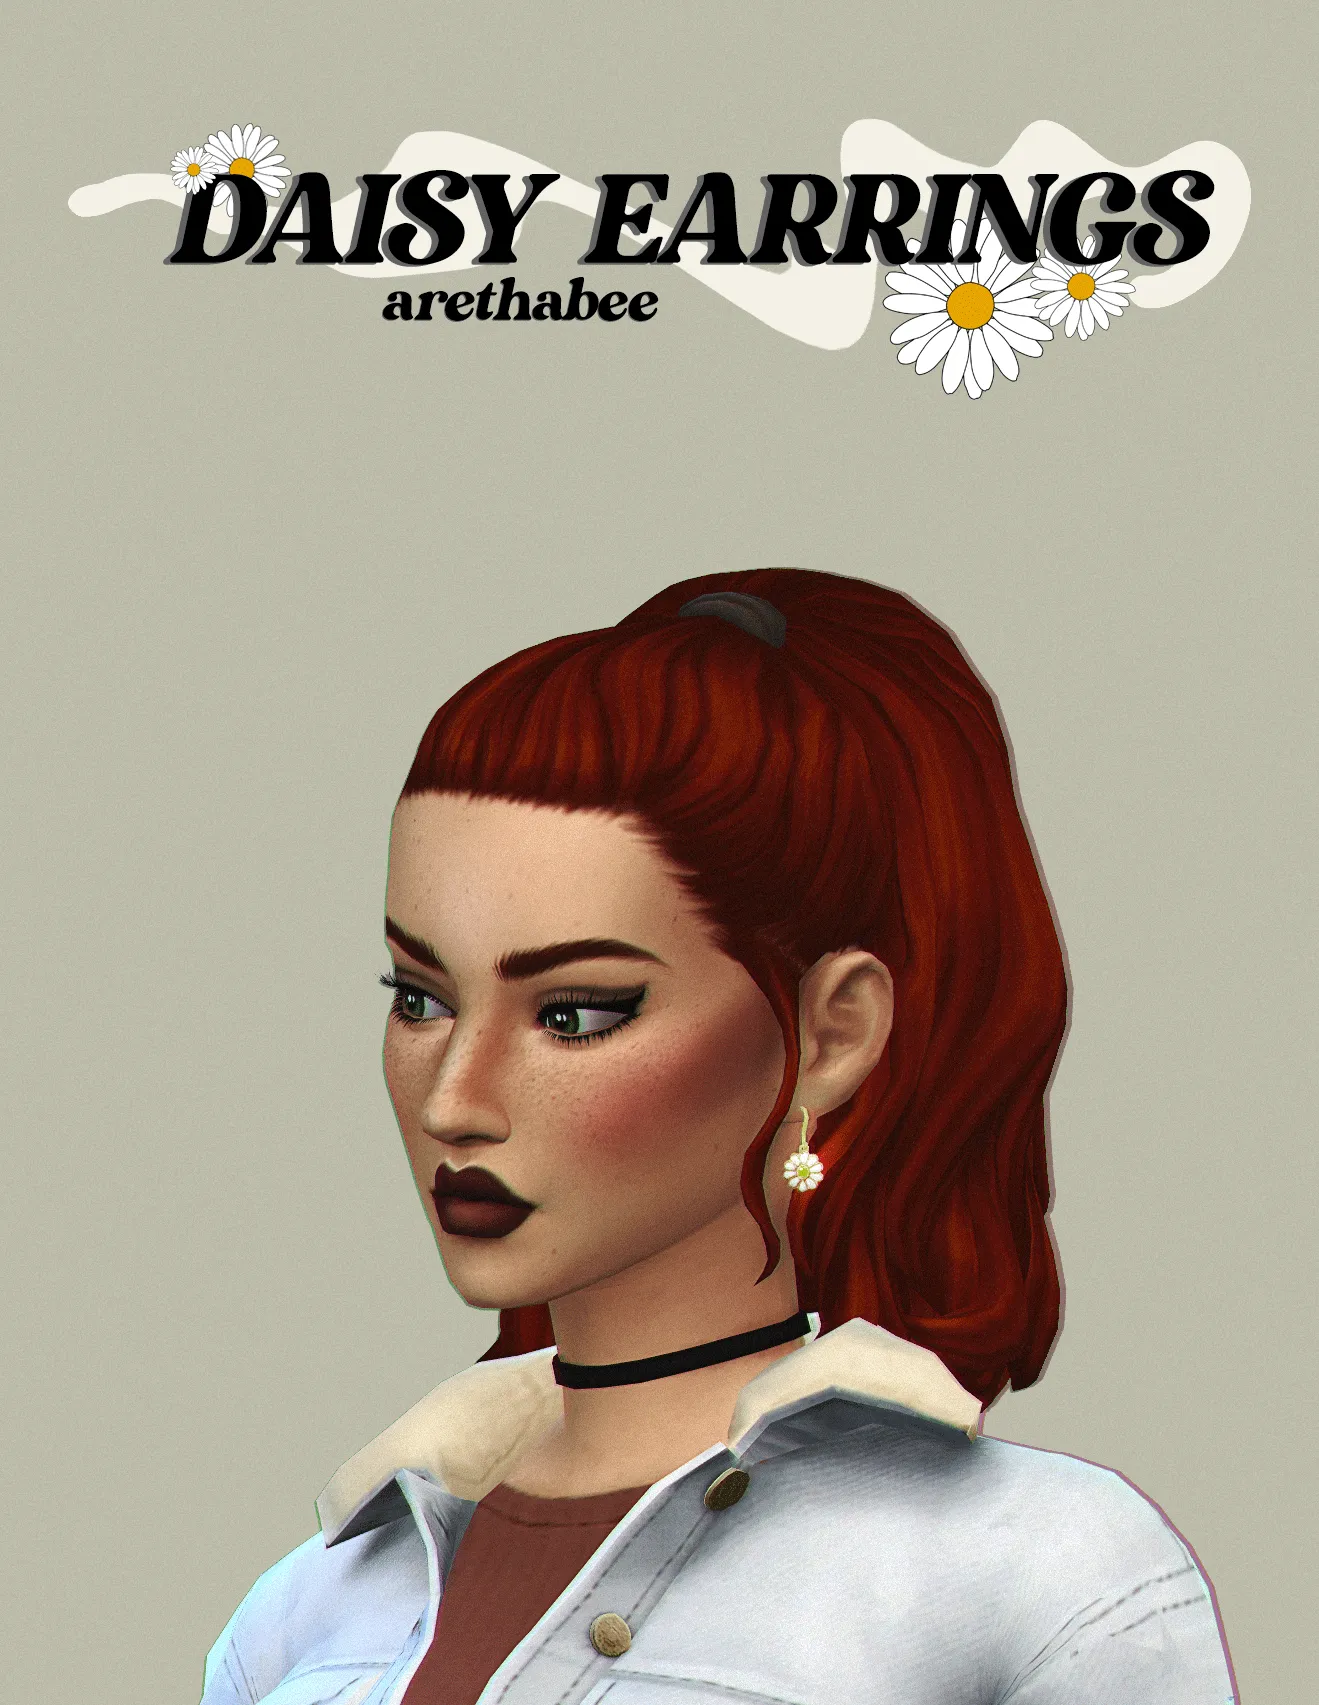 daisy earrings (patron gift)